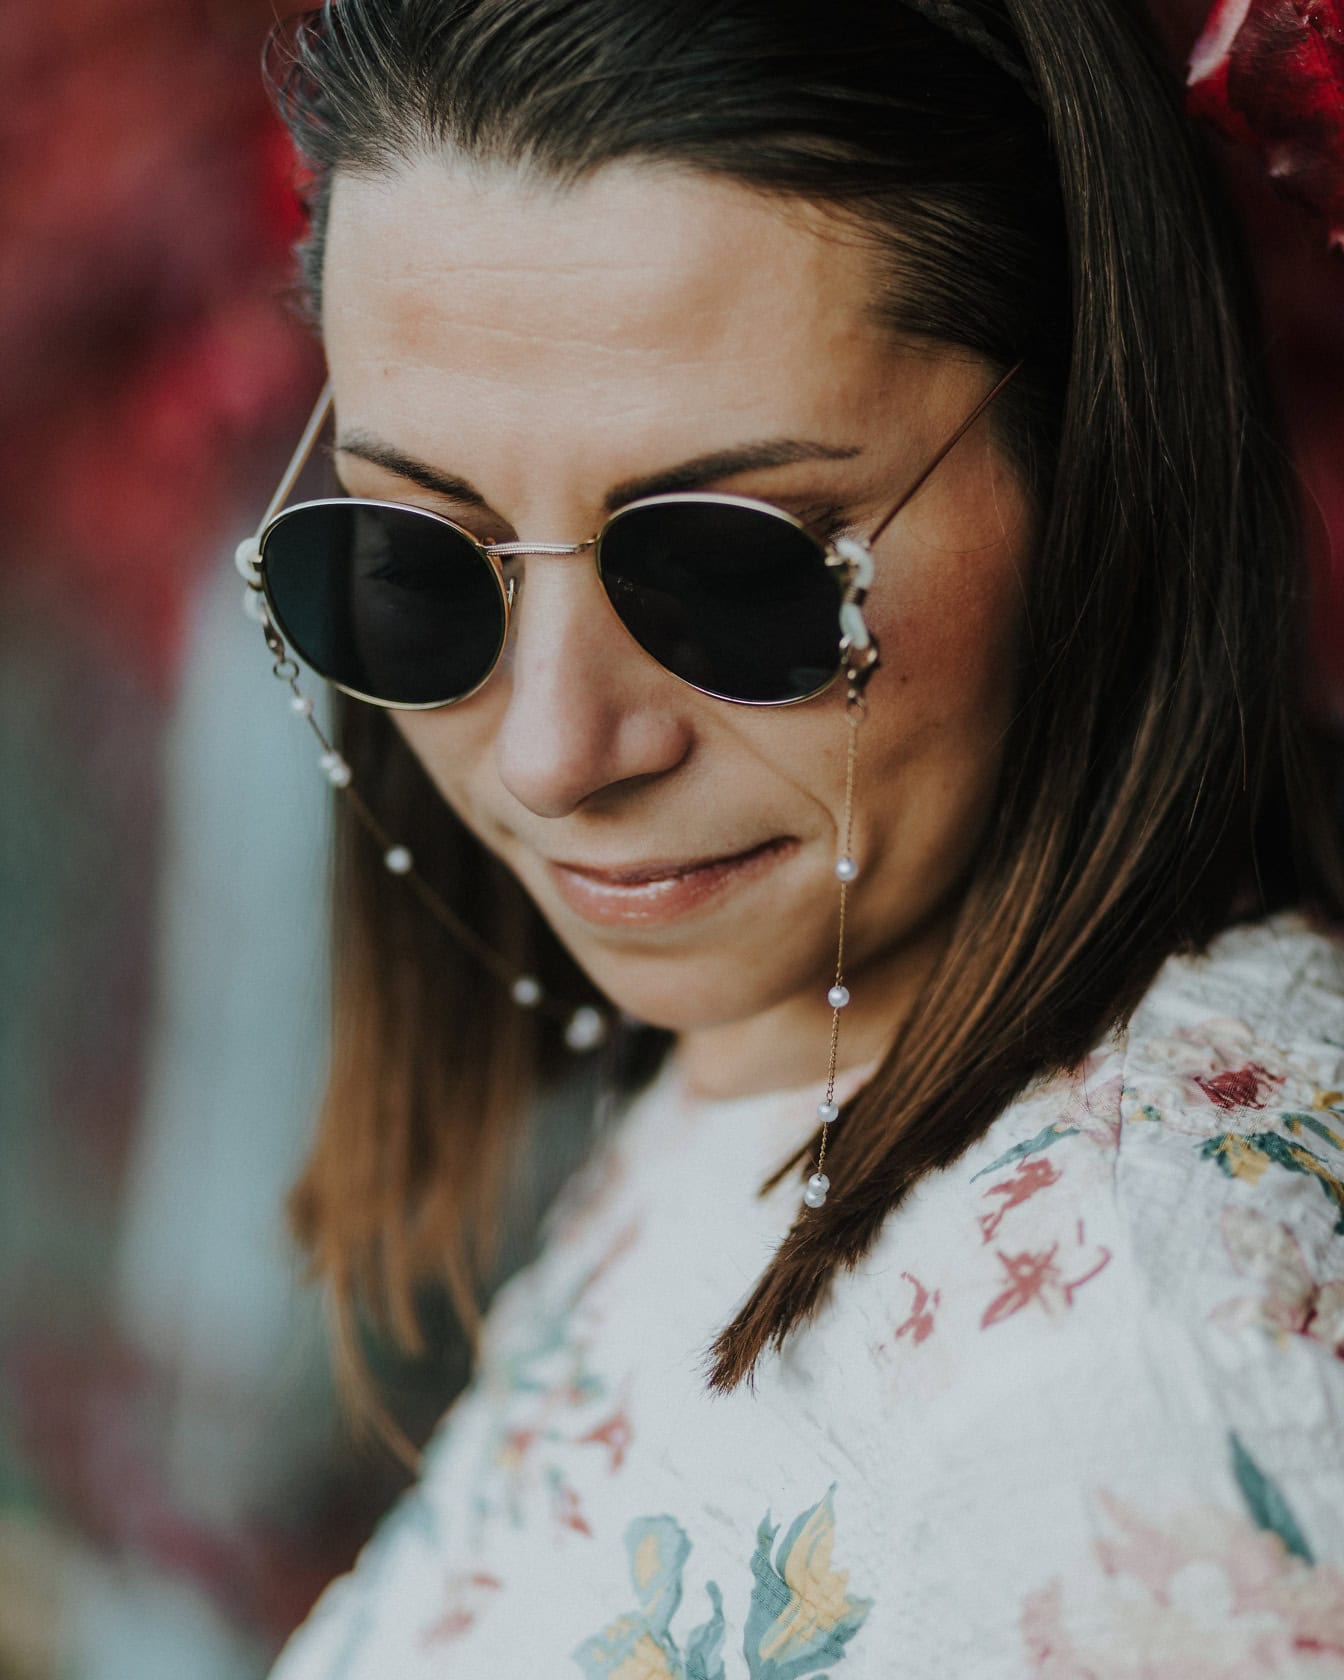 Лицев портрет на млада жена, носеща слънчеви очила в стил Джон Ленън и риза на цветя